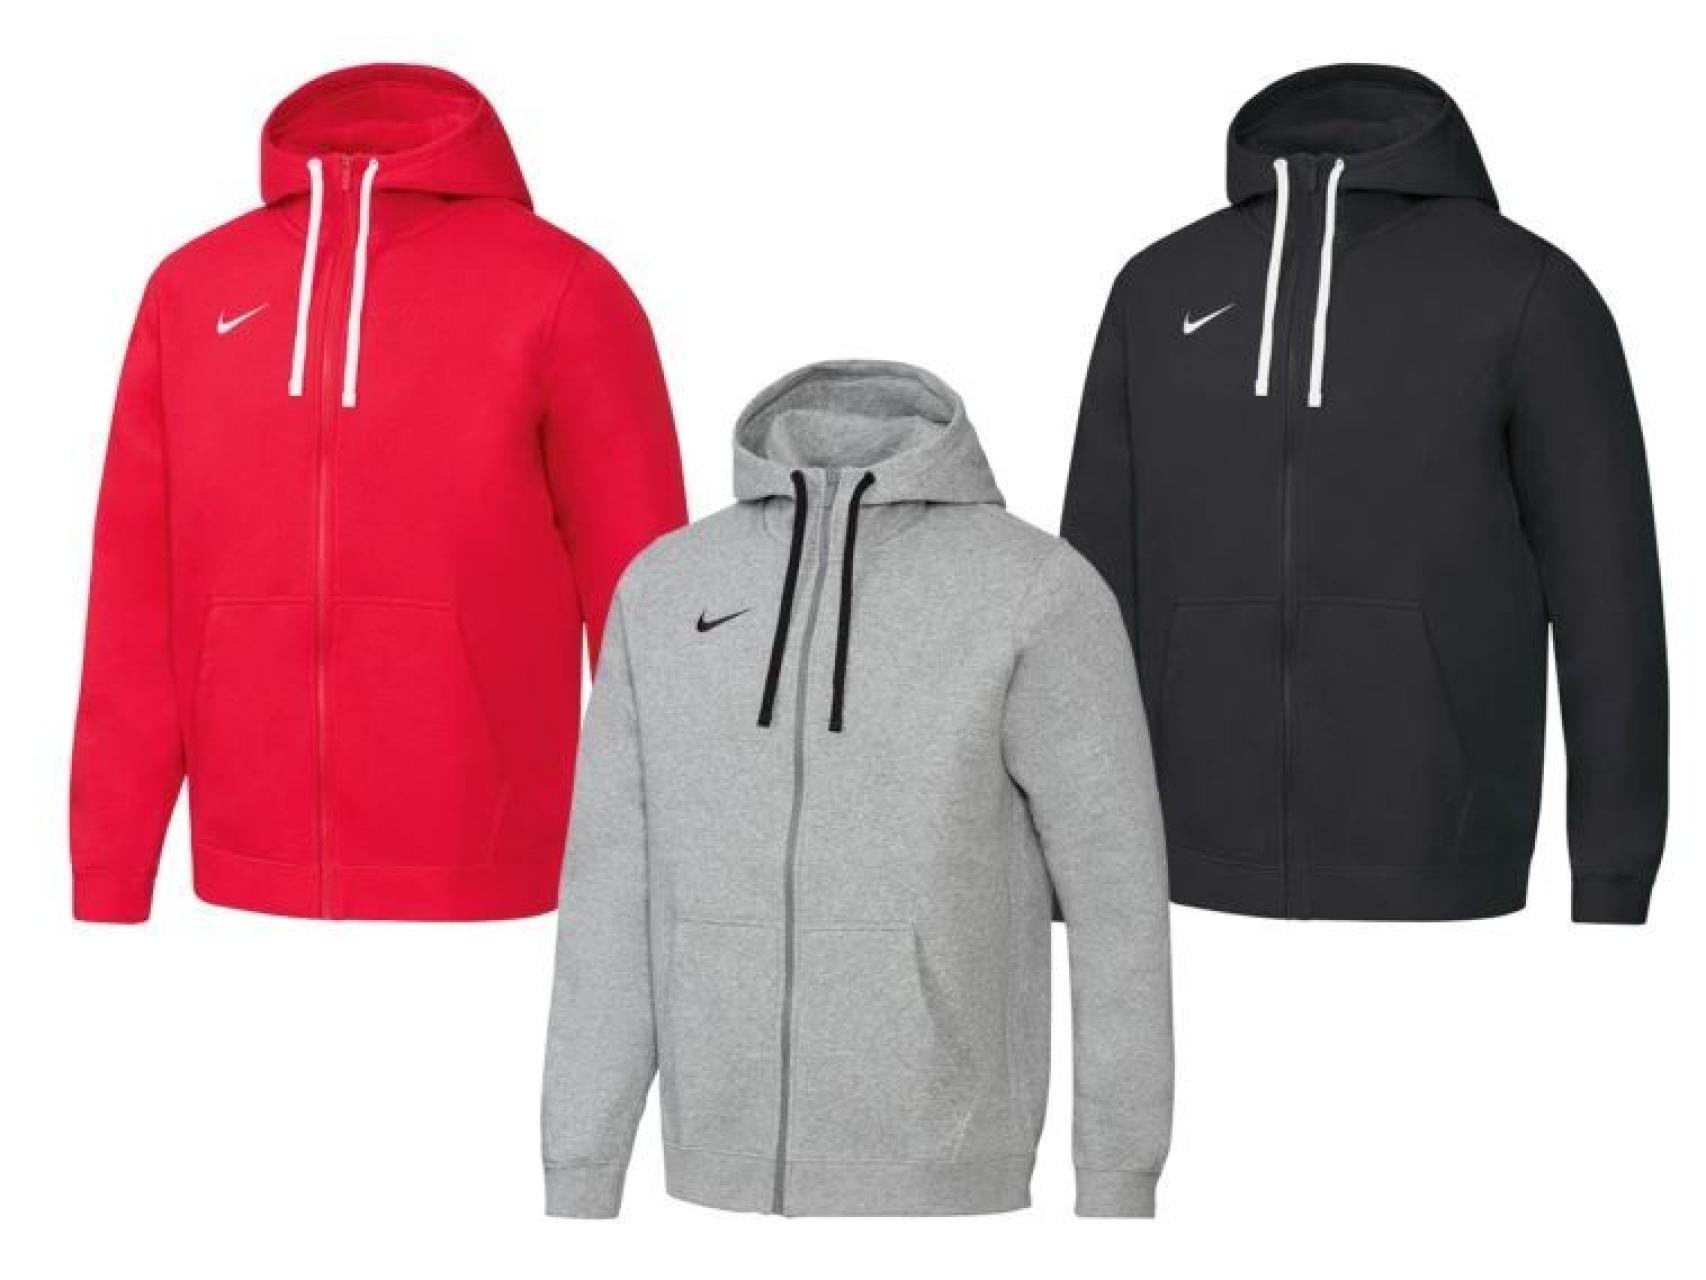 Lidl ya vende hasta ropa de Nike tirada de precio: estas son prendas que puedes encontrar